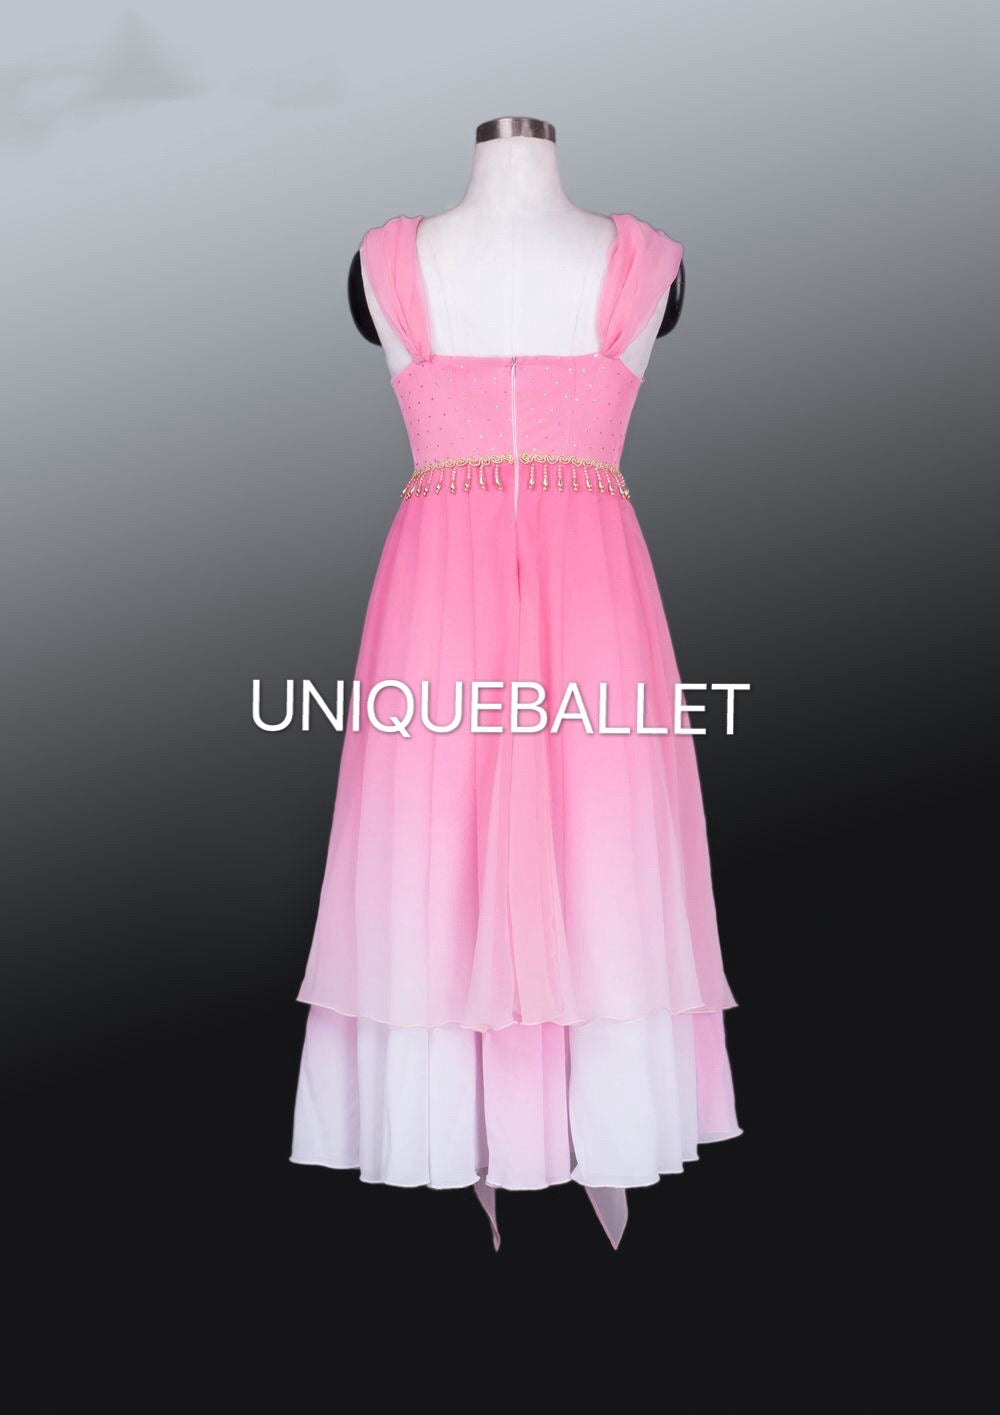 Lyrical Pink Gradient Ballet Tutu Costume Le Corsaire Pas de Deux Stage Costume Long Dress -QRLECOSRPNK